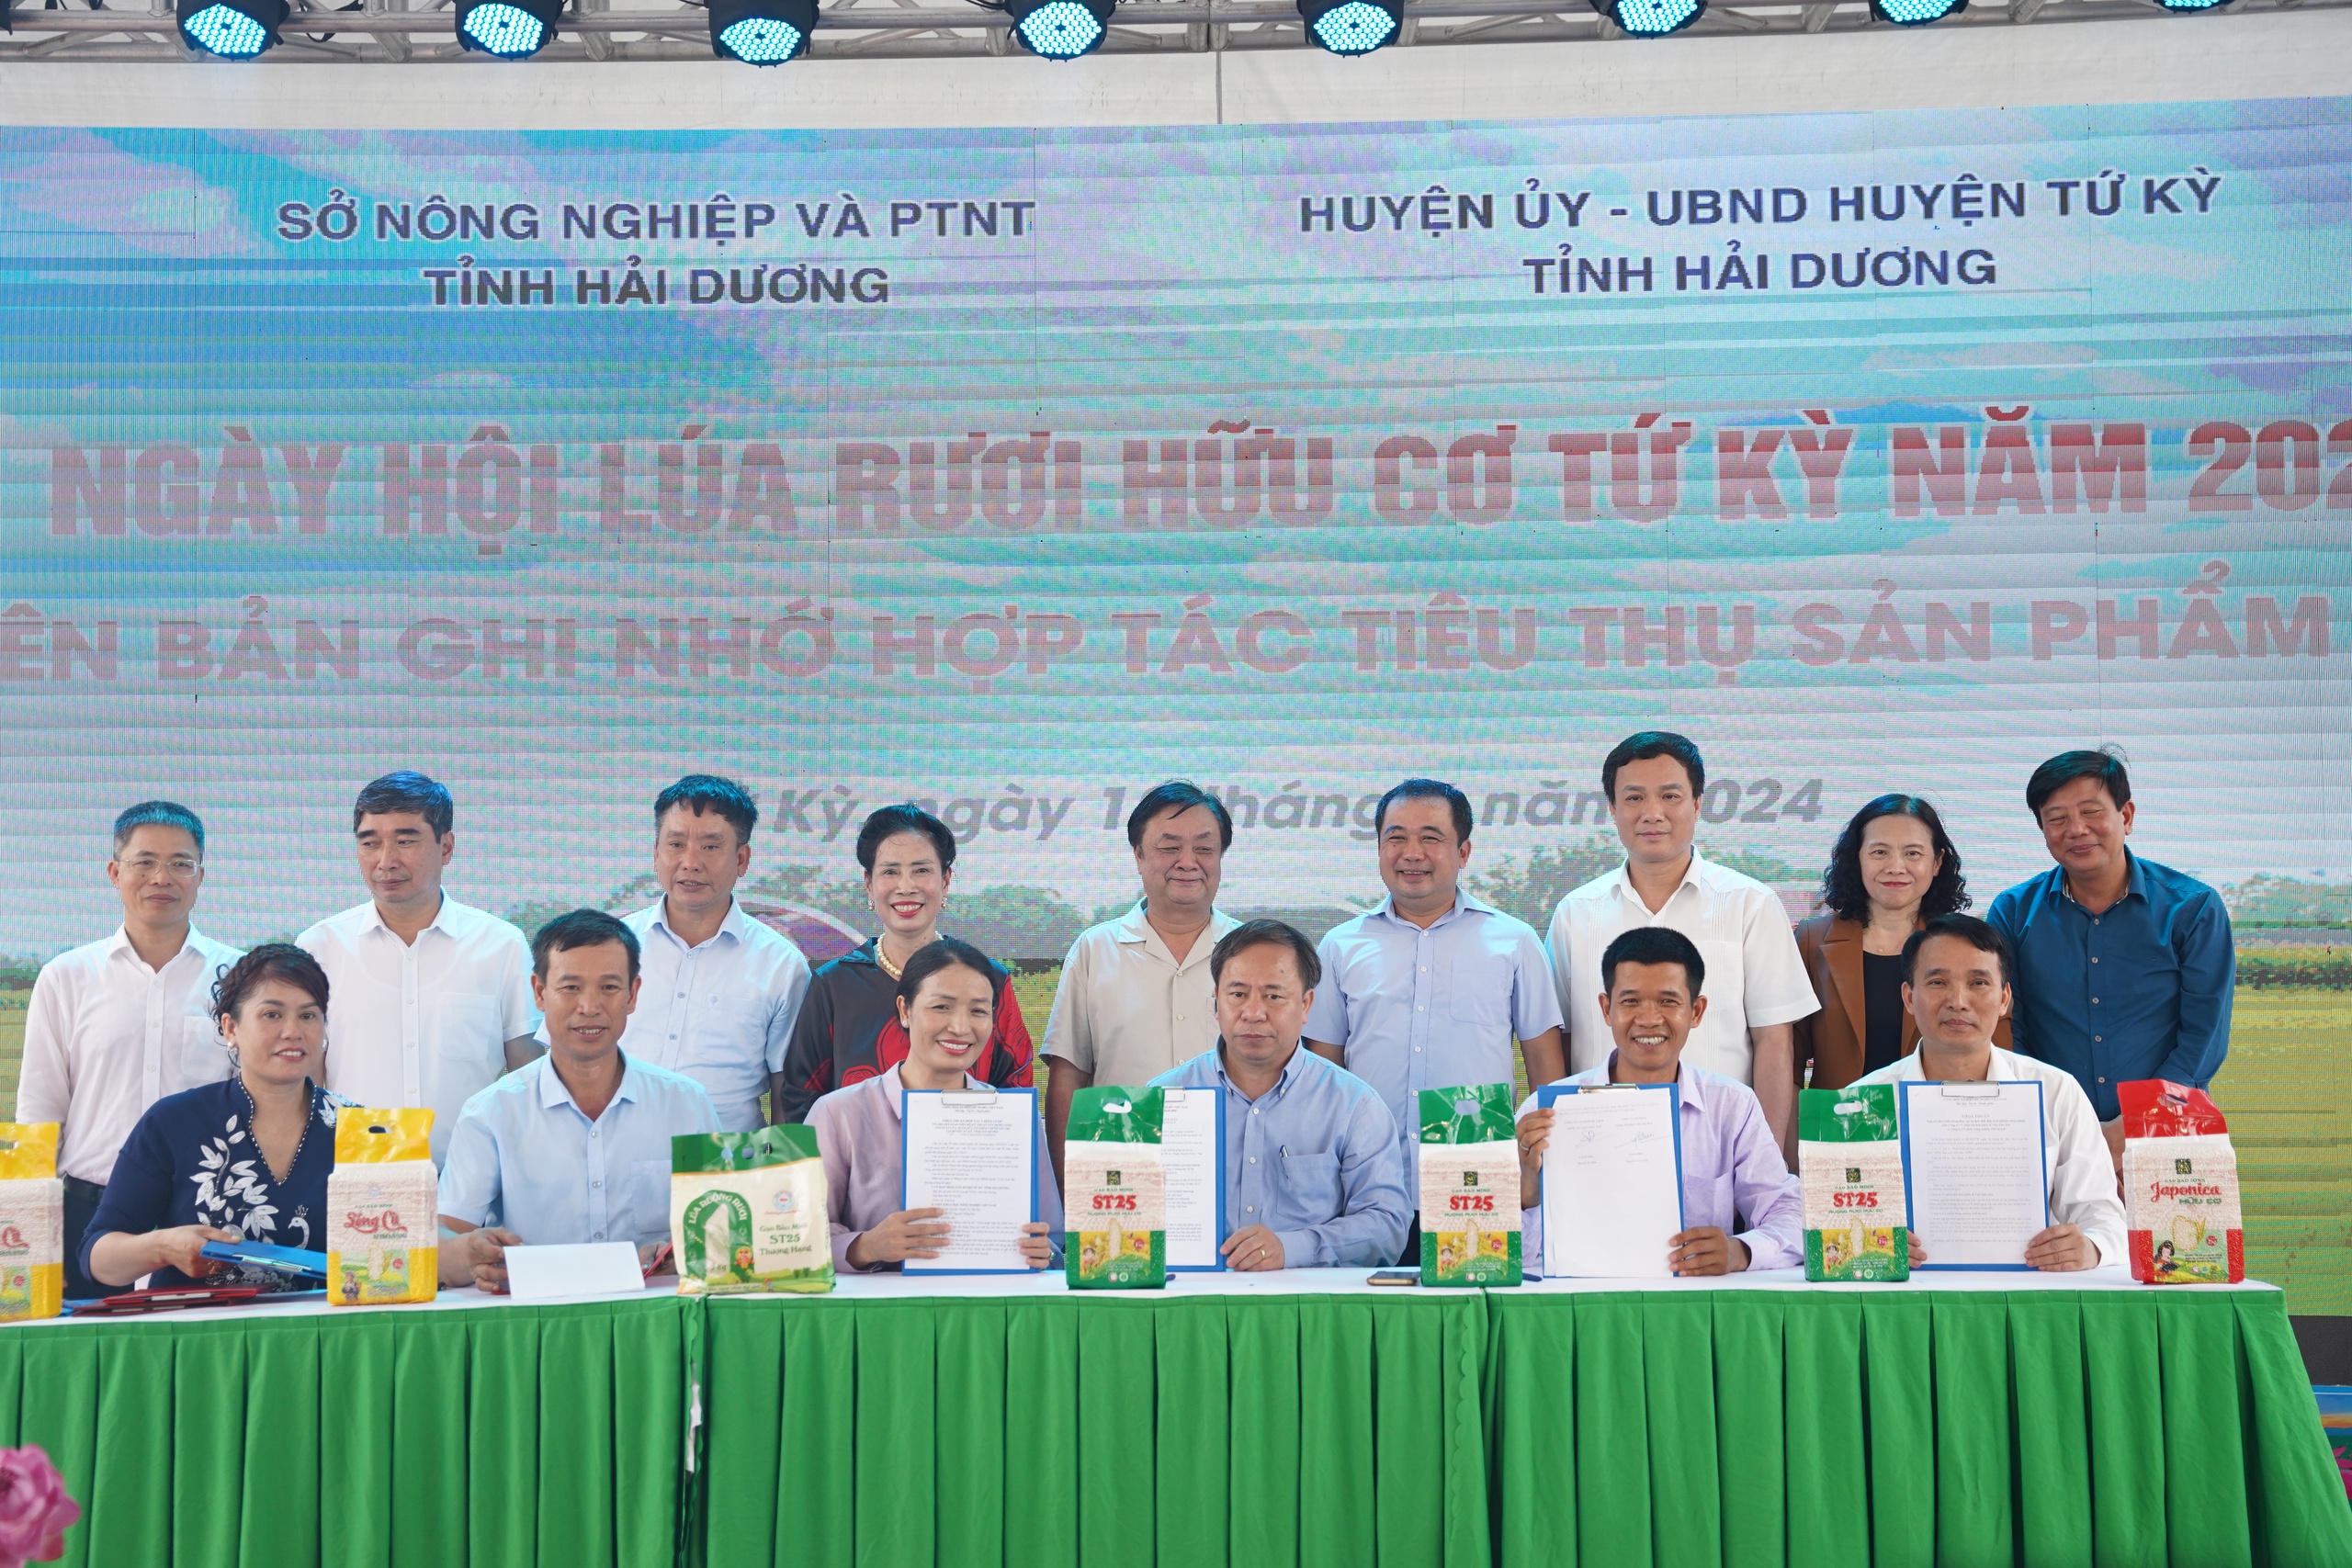 Một huyện của tỉnh Hải Dương, tổ chức ngày hội cho cây lúa, con rươi, Bộ trưởng Bộ NNPTNT đến tận nơi xem- Ảnh 2.